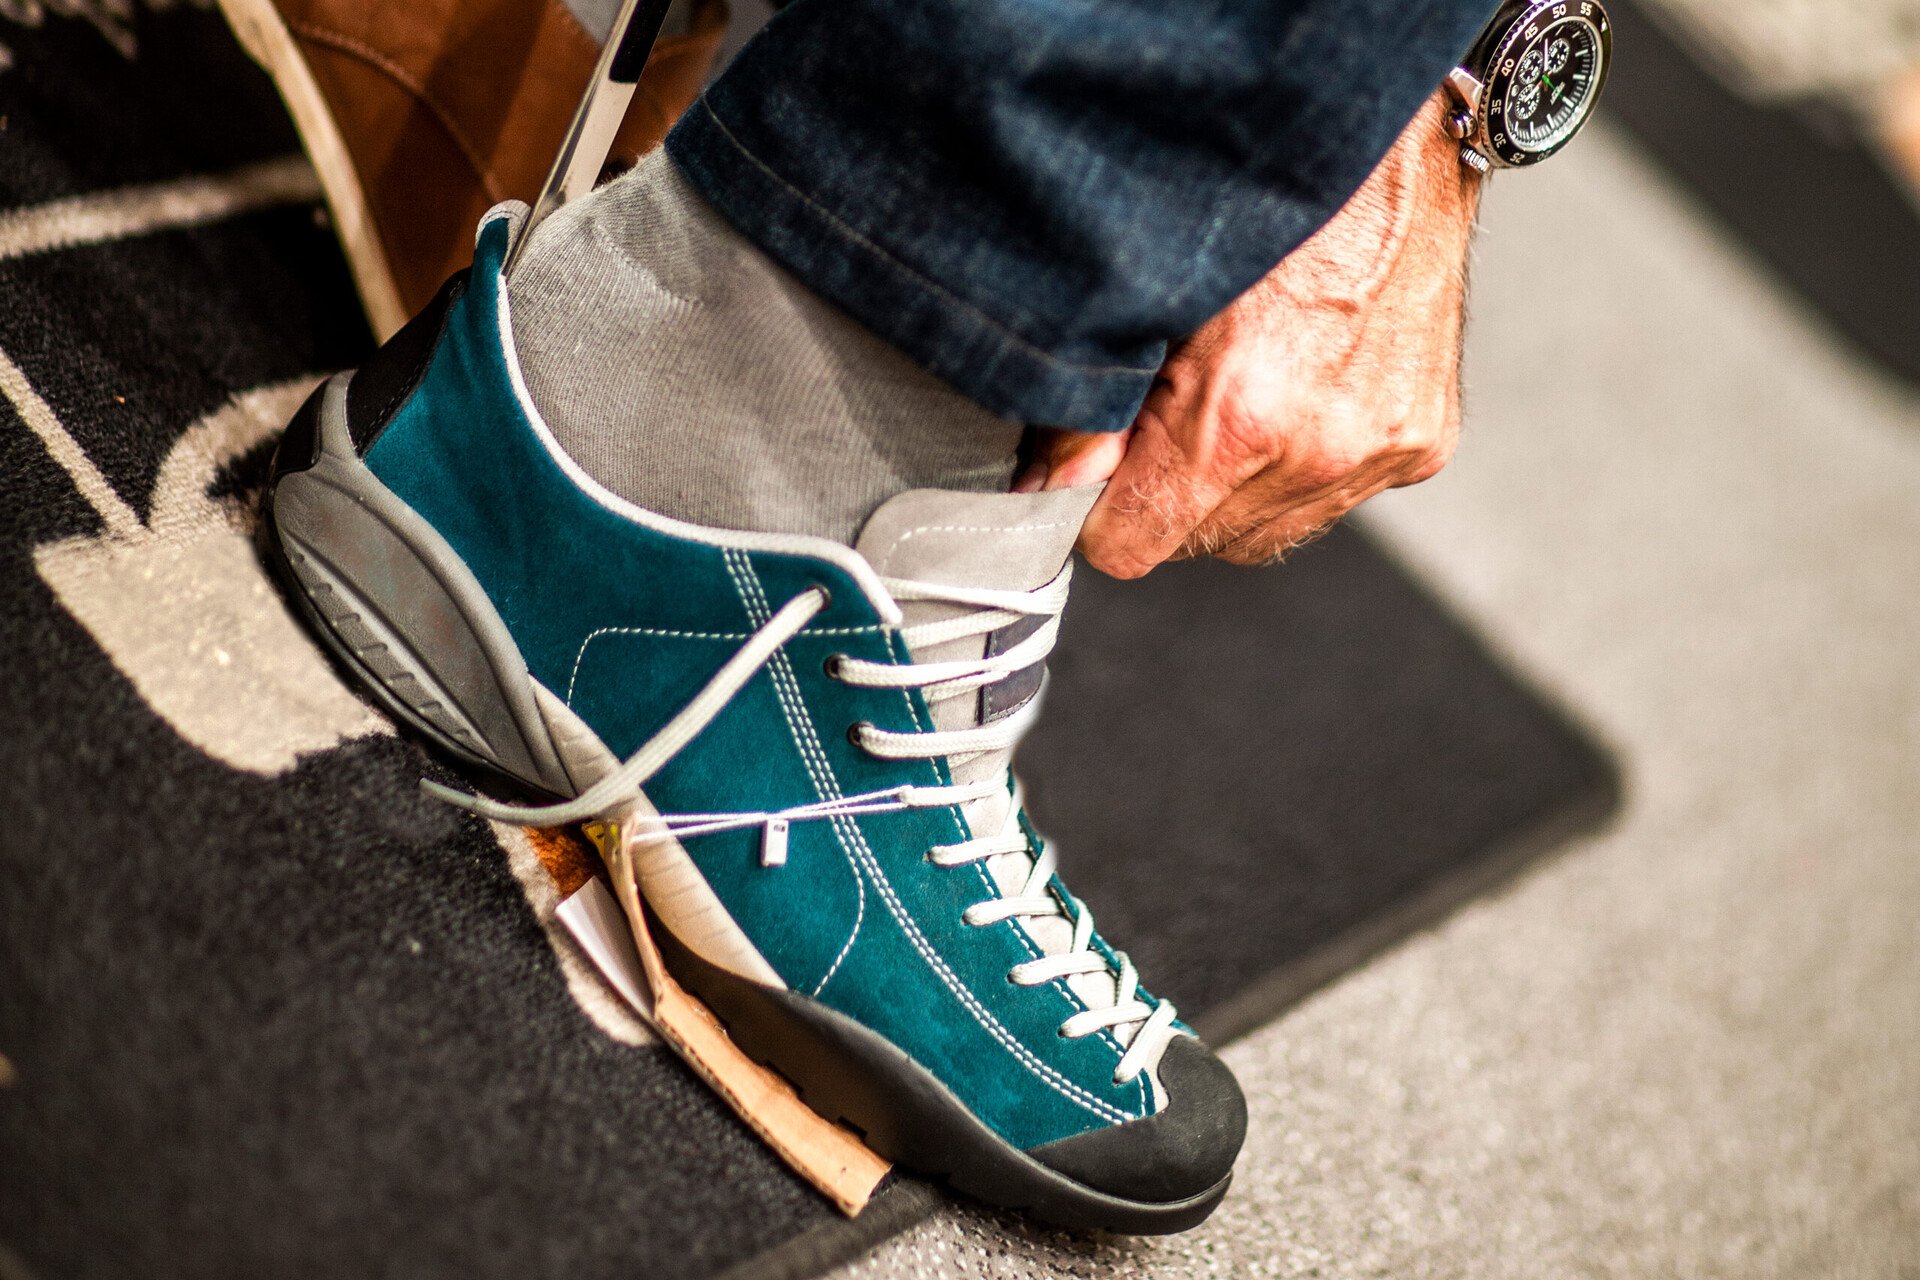 Nahaufnahme vom Anprobieren beim Schuhkauf. Das Bild steht für Tipps, um Blasen an den Füßen vorzubeugen.